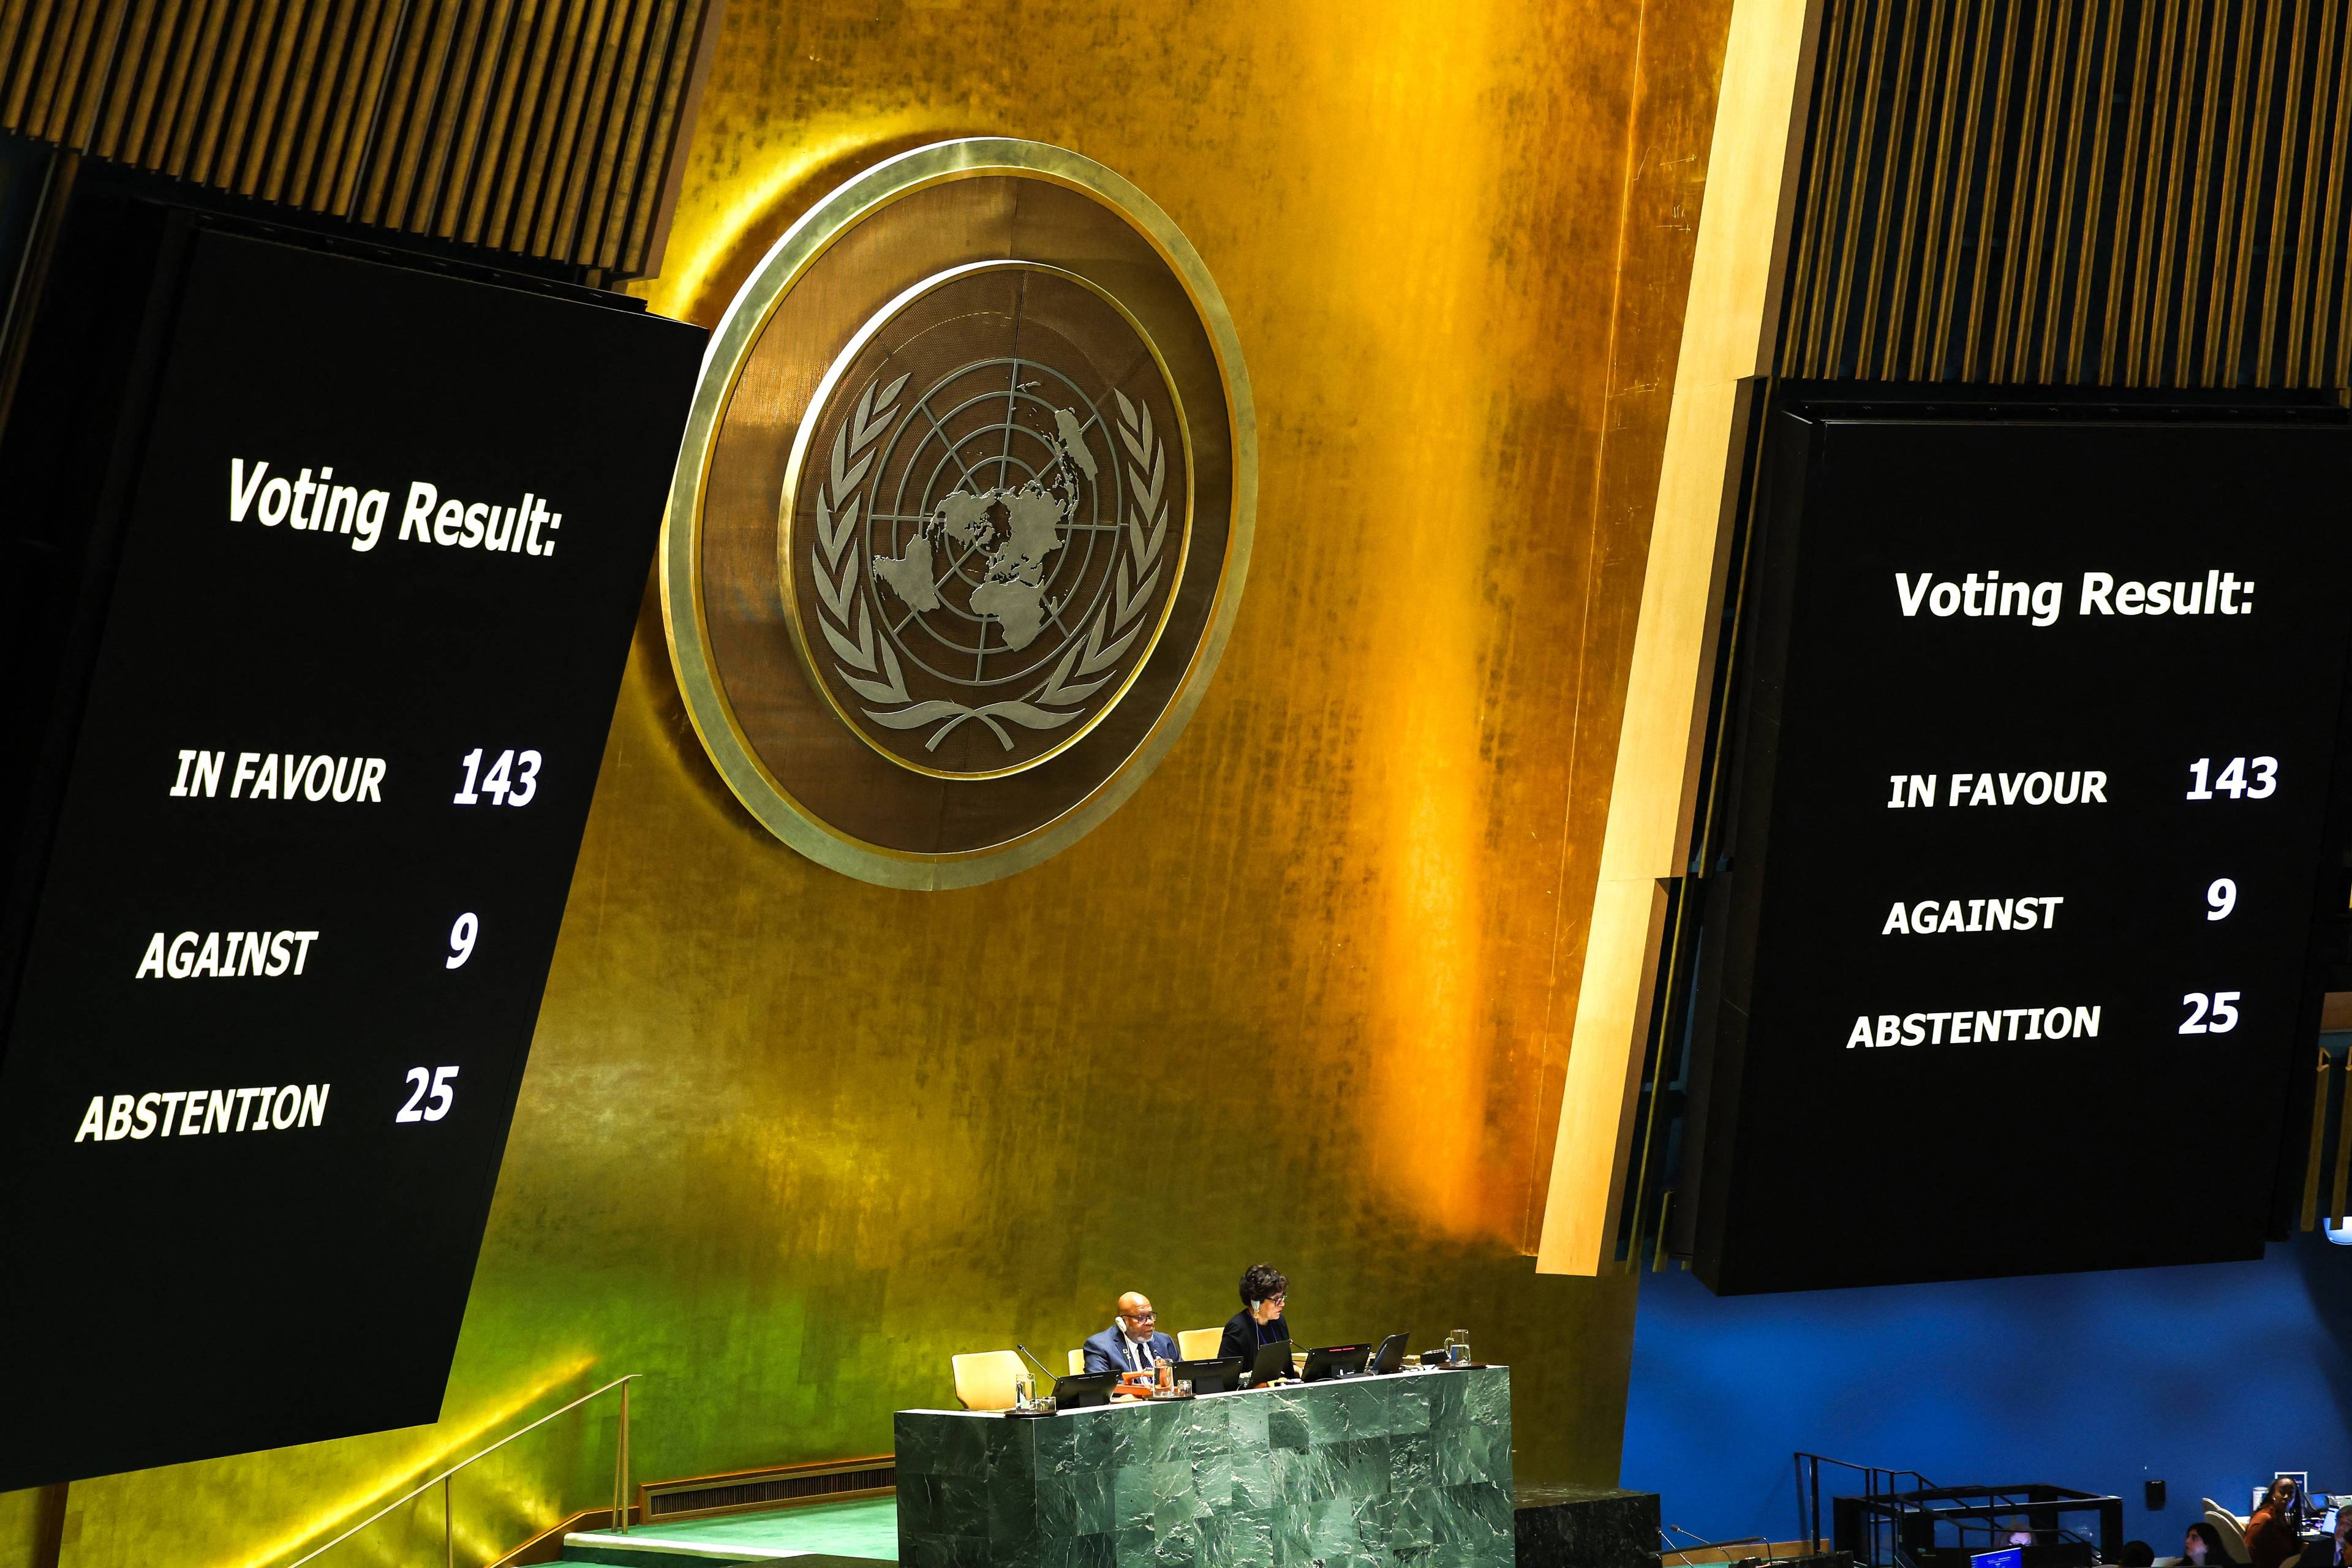 Wyniki głosowania nad rezolucją Rady Bezpieczeństwa ONZ w sprawie ponownego rozważenia i poparcia pełnego członkostwa Palestyny w Organizacji Narodów Zjednoczonych są wyświetlane podczas specjalnej sesji Zgromadzenia Ogólnego ONZ w siedzibie ONZ w Nowym Jorku